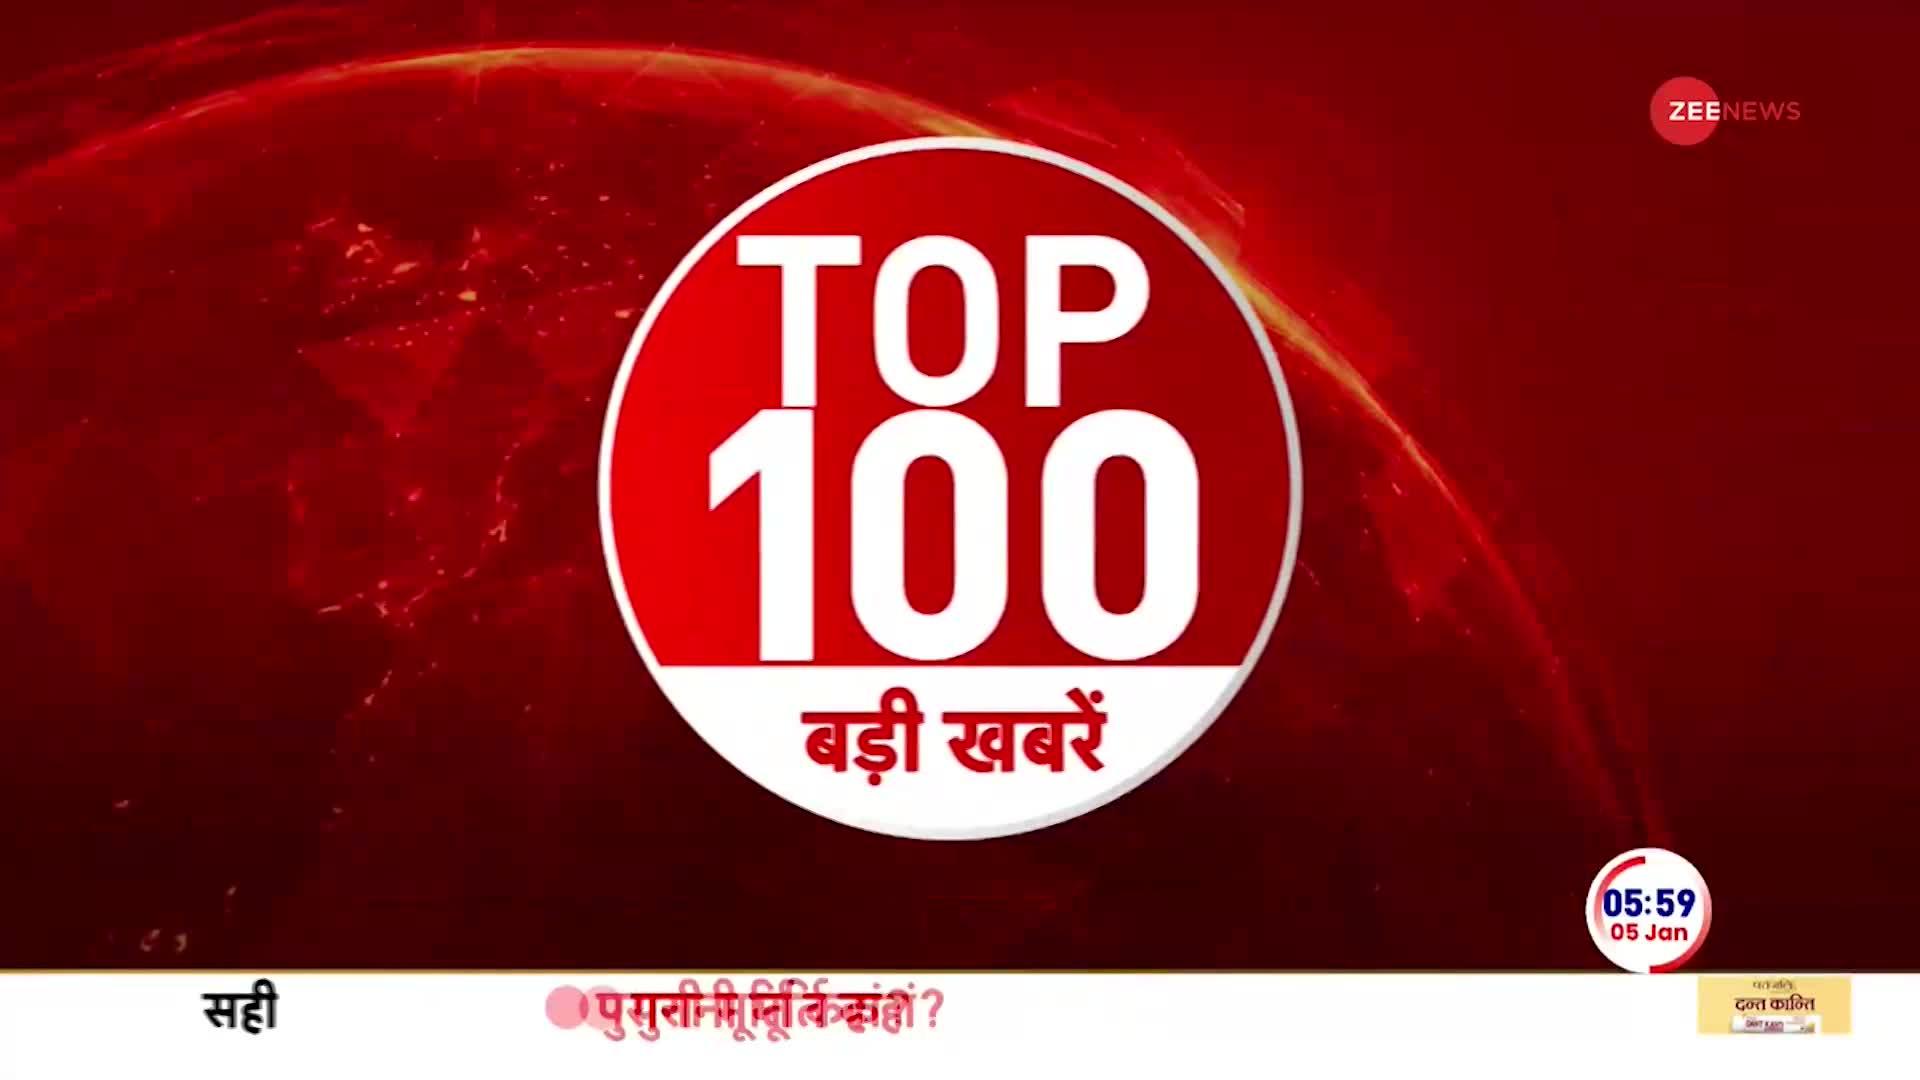 TOP 100 News: देखें दिन की 100 बड़ी खबरें फटाफट अंदाज़ में